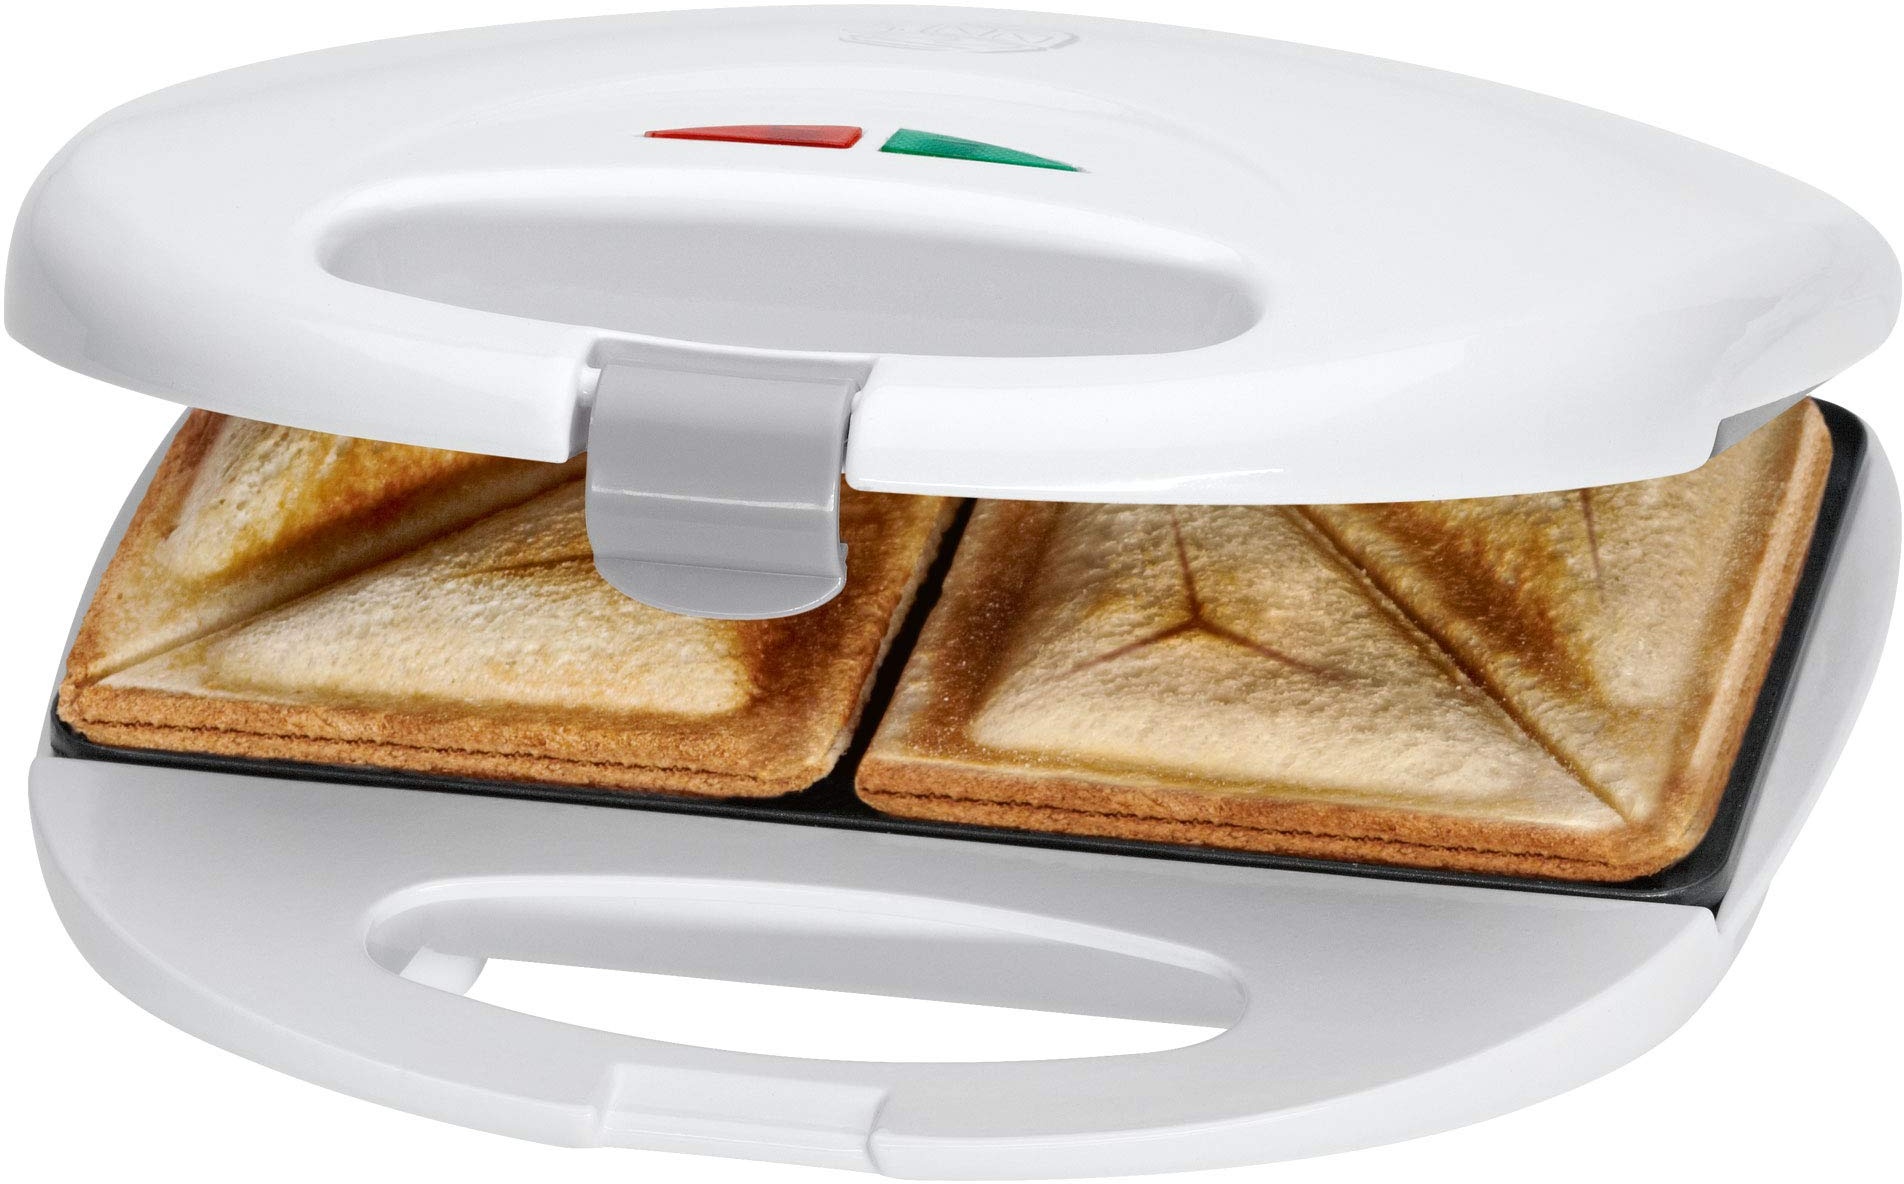 Clatronic Sandwichmaker mit dreieckigen Sandwichplatten | Sandwichtoaster mit automatischem Temperaturregler & Antihaftbeschichtung | Sandwich Maker mit Verriegelungssystem | ST 3477 weiß